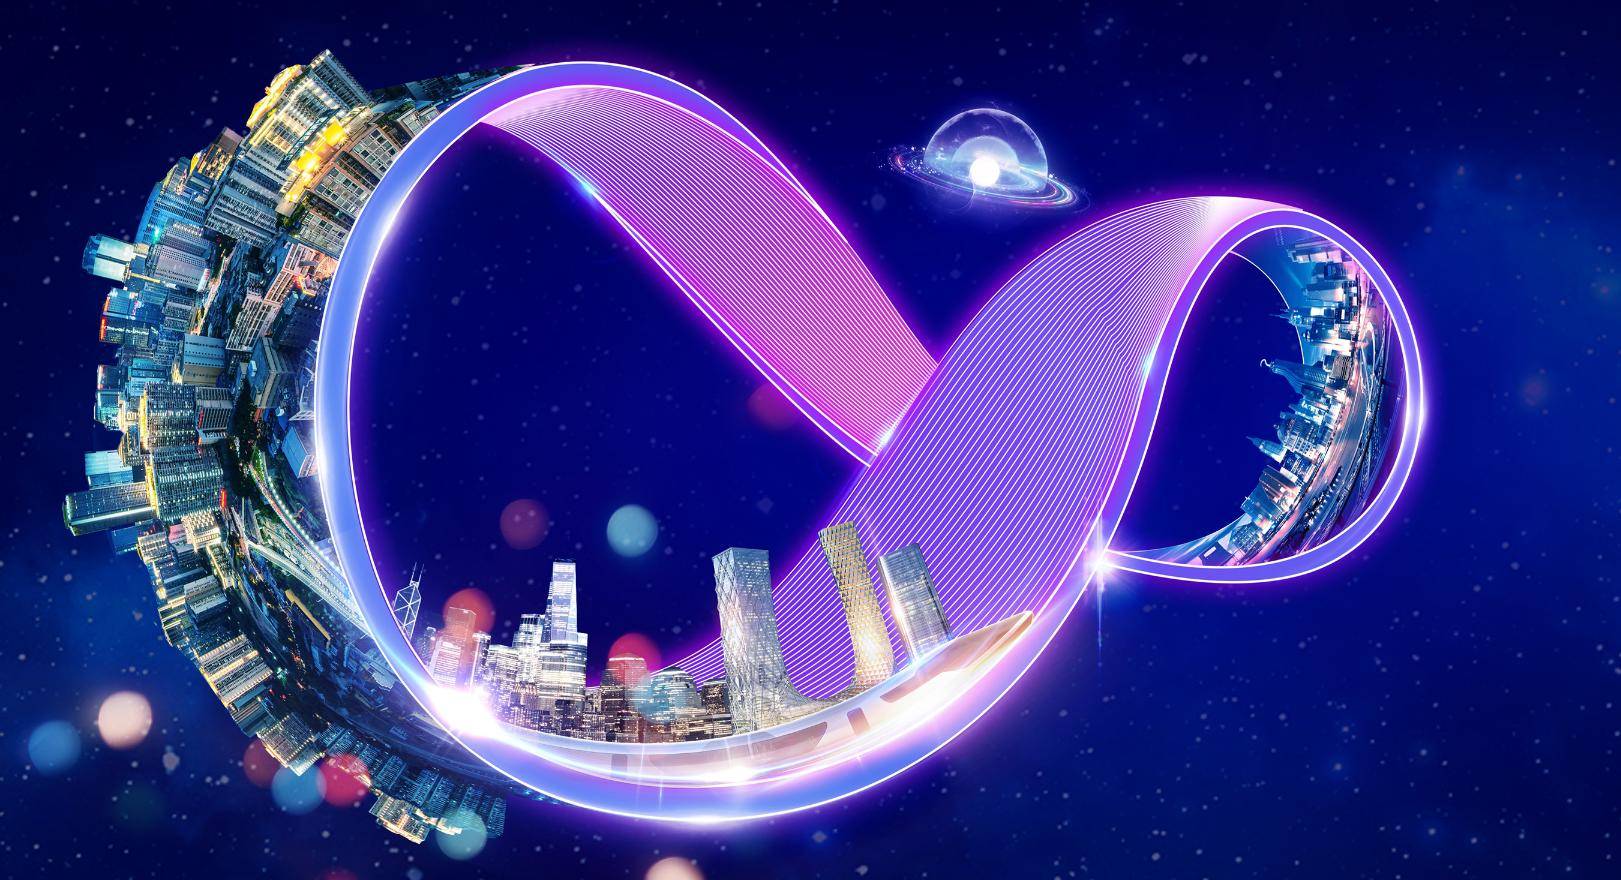 这是一幅展现未来科幻城市的艺术图，城市沿着环形结构延伸，伴随着炫目的紫色光环，在浩瀚星空中呈现无限循环之态。